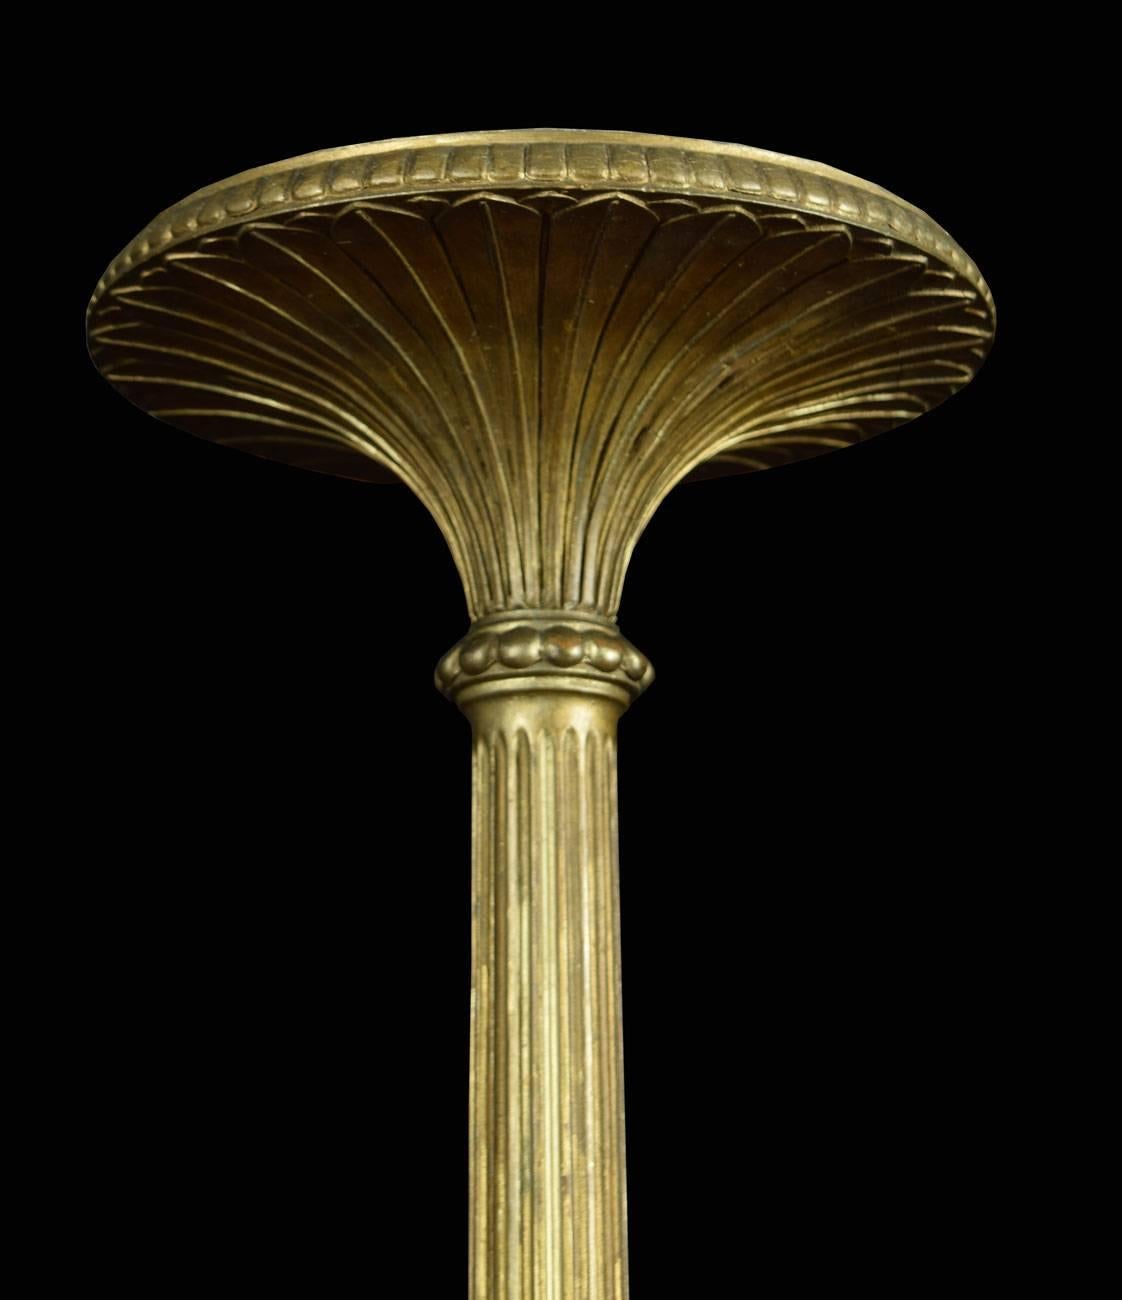 Vergoldete Fackel aus dem späten 19. Jahrhundert mit runder Spitze über einer kannelierten, geriffelten Säule und einem mit Akanthus verkleideten runden Sockel mit quadratischem Sockel.

Abmessungen:

Höhe: 56 Zoll.

Durchmesser der Spitze: 11